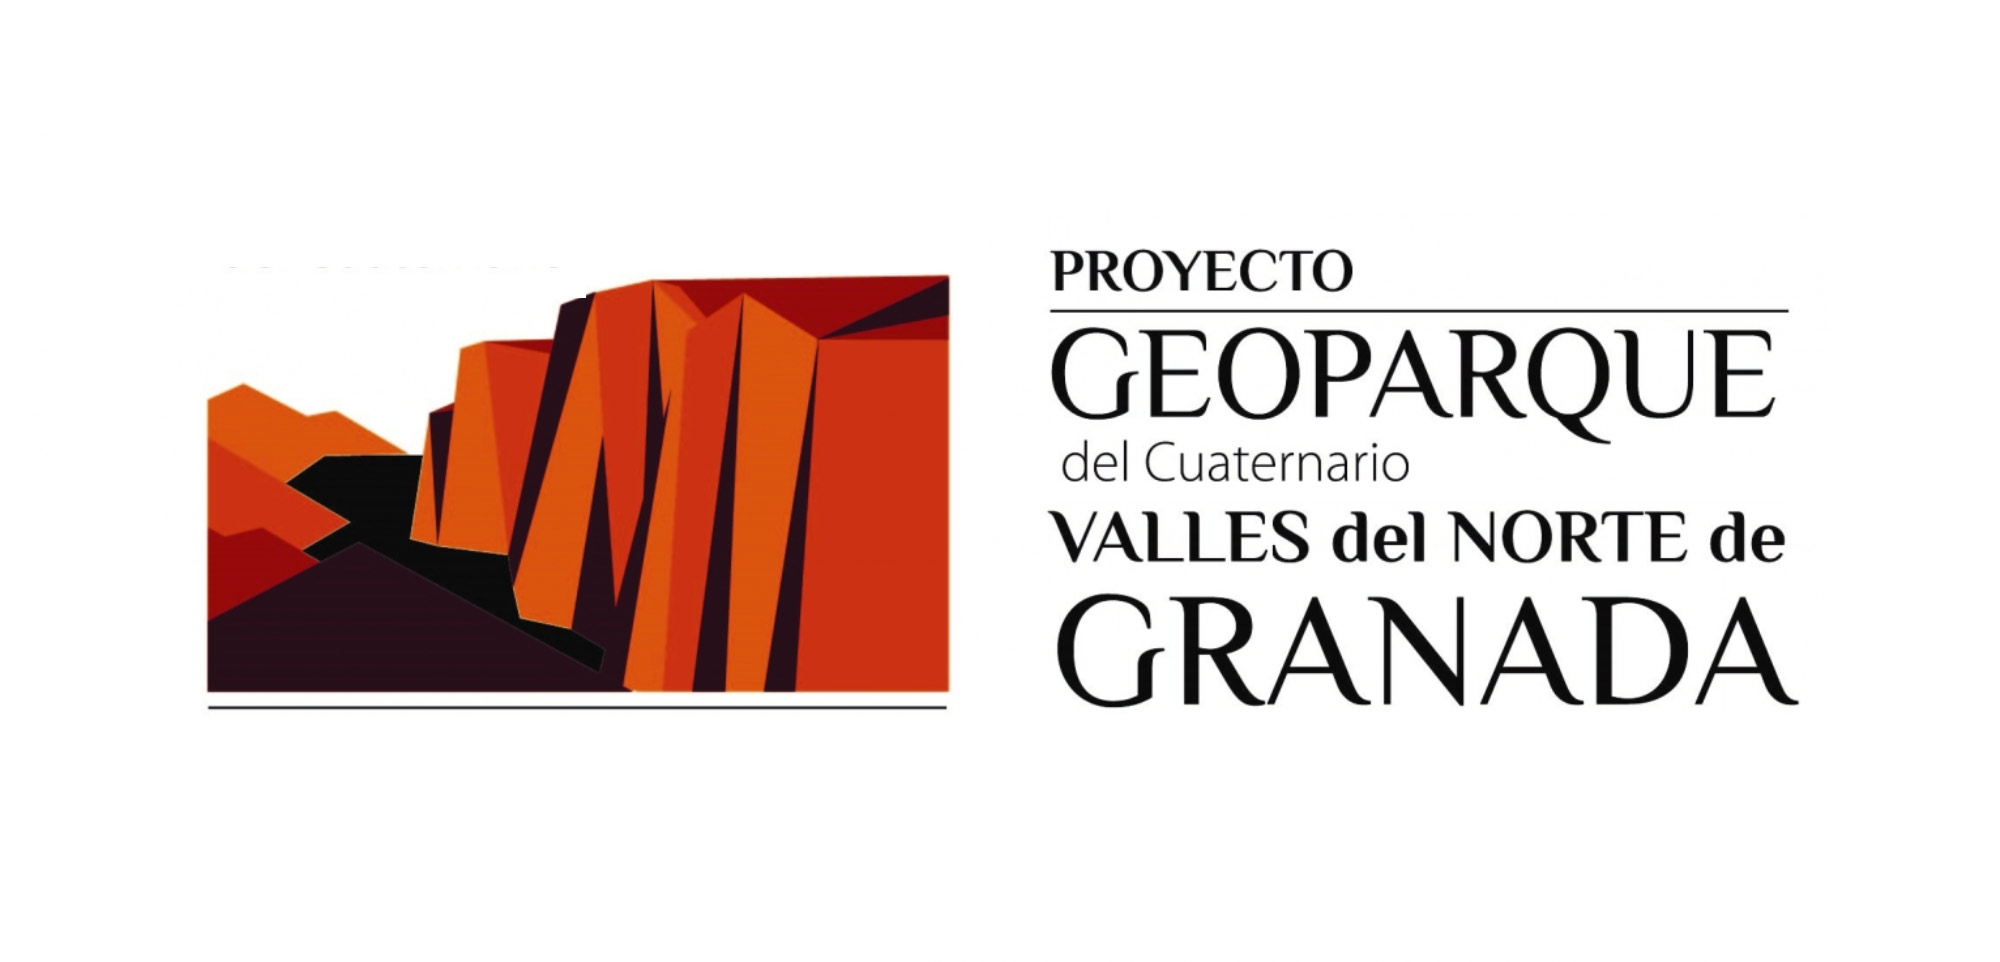 Geoporque del Cuaternario en Granada